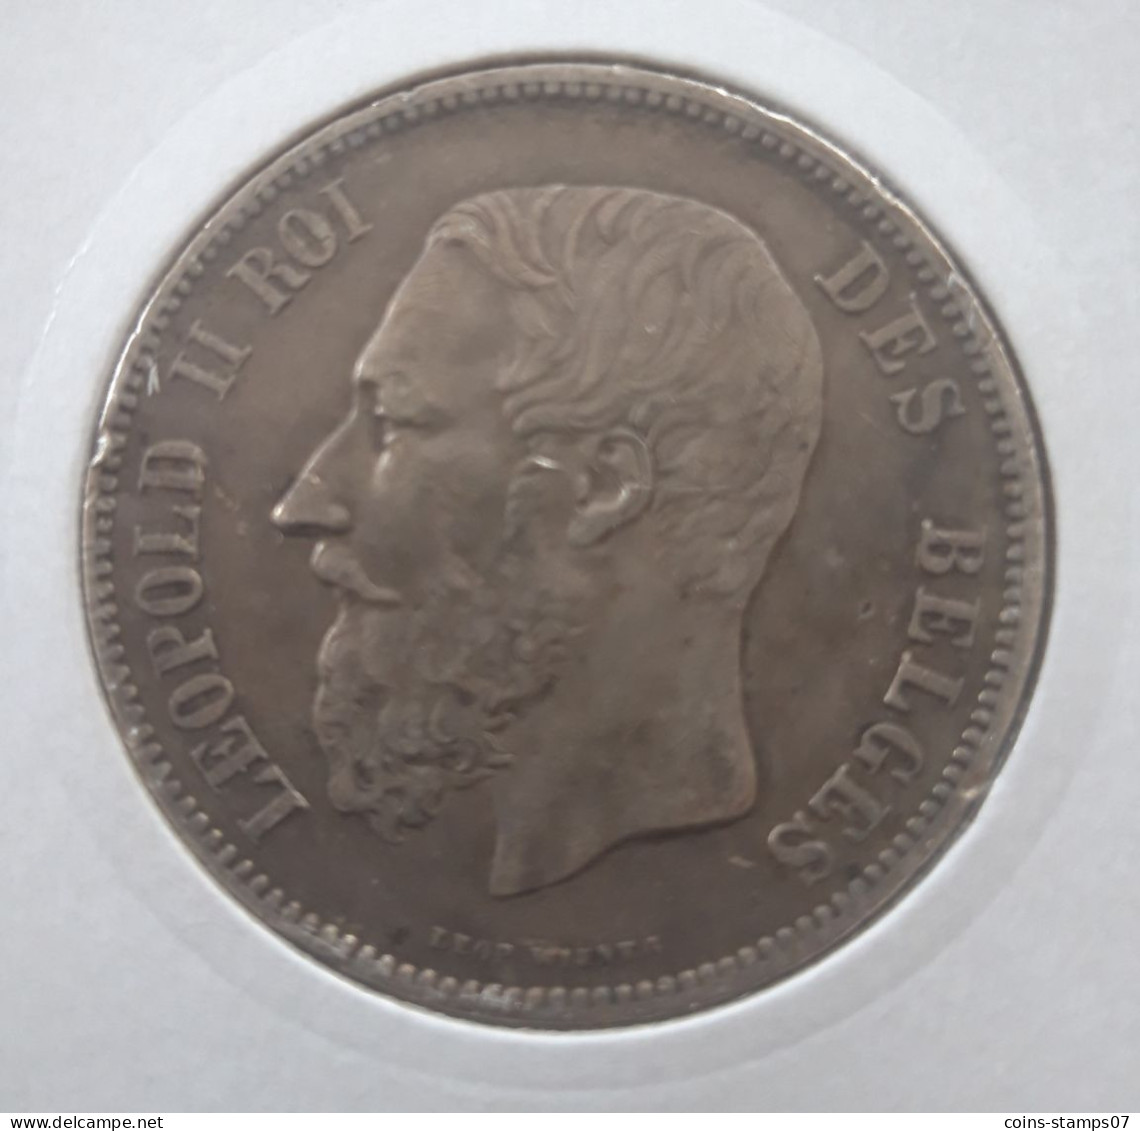 Belgique - 5 Francs Léopold II 1873 - 5 Frank